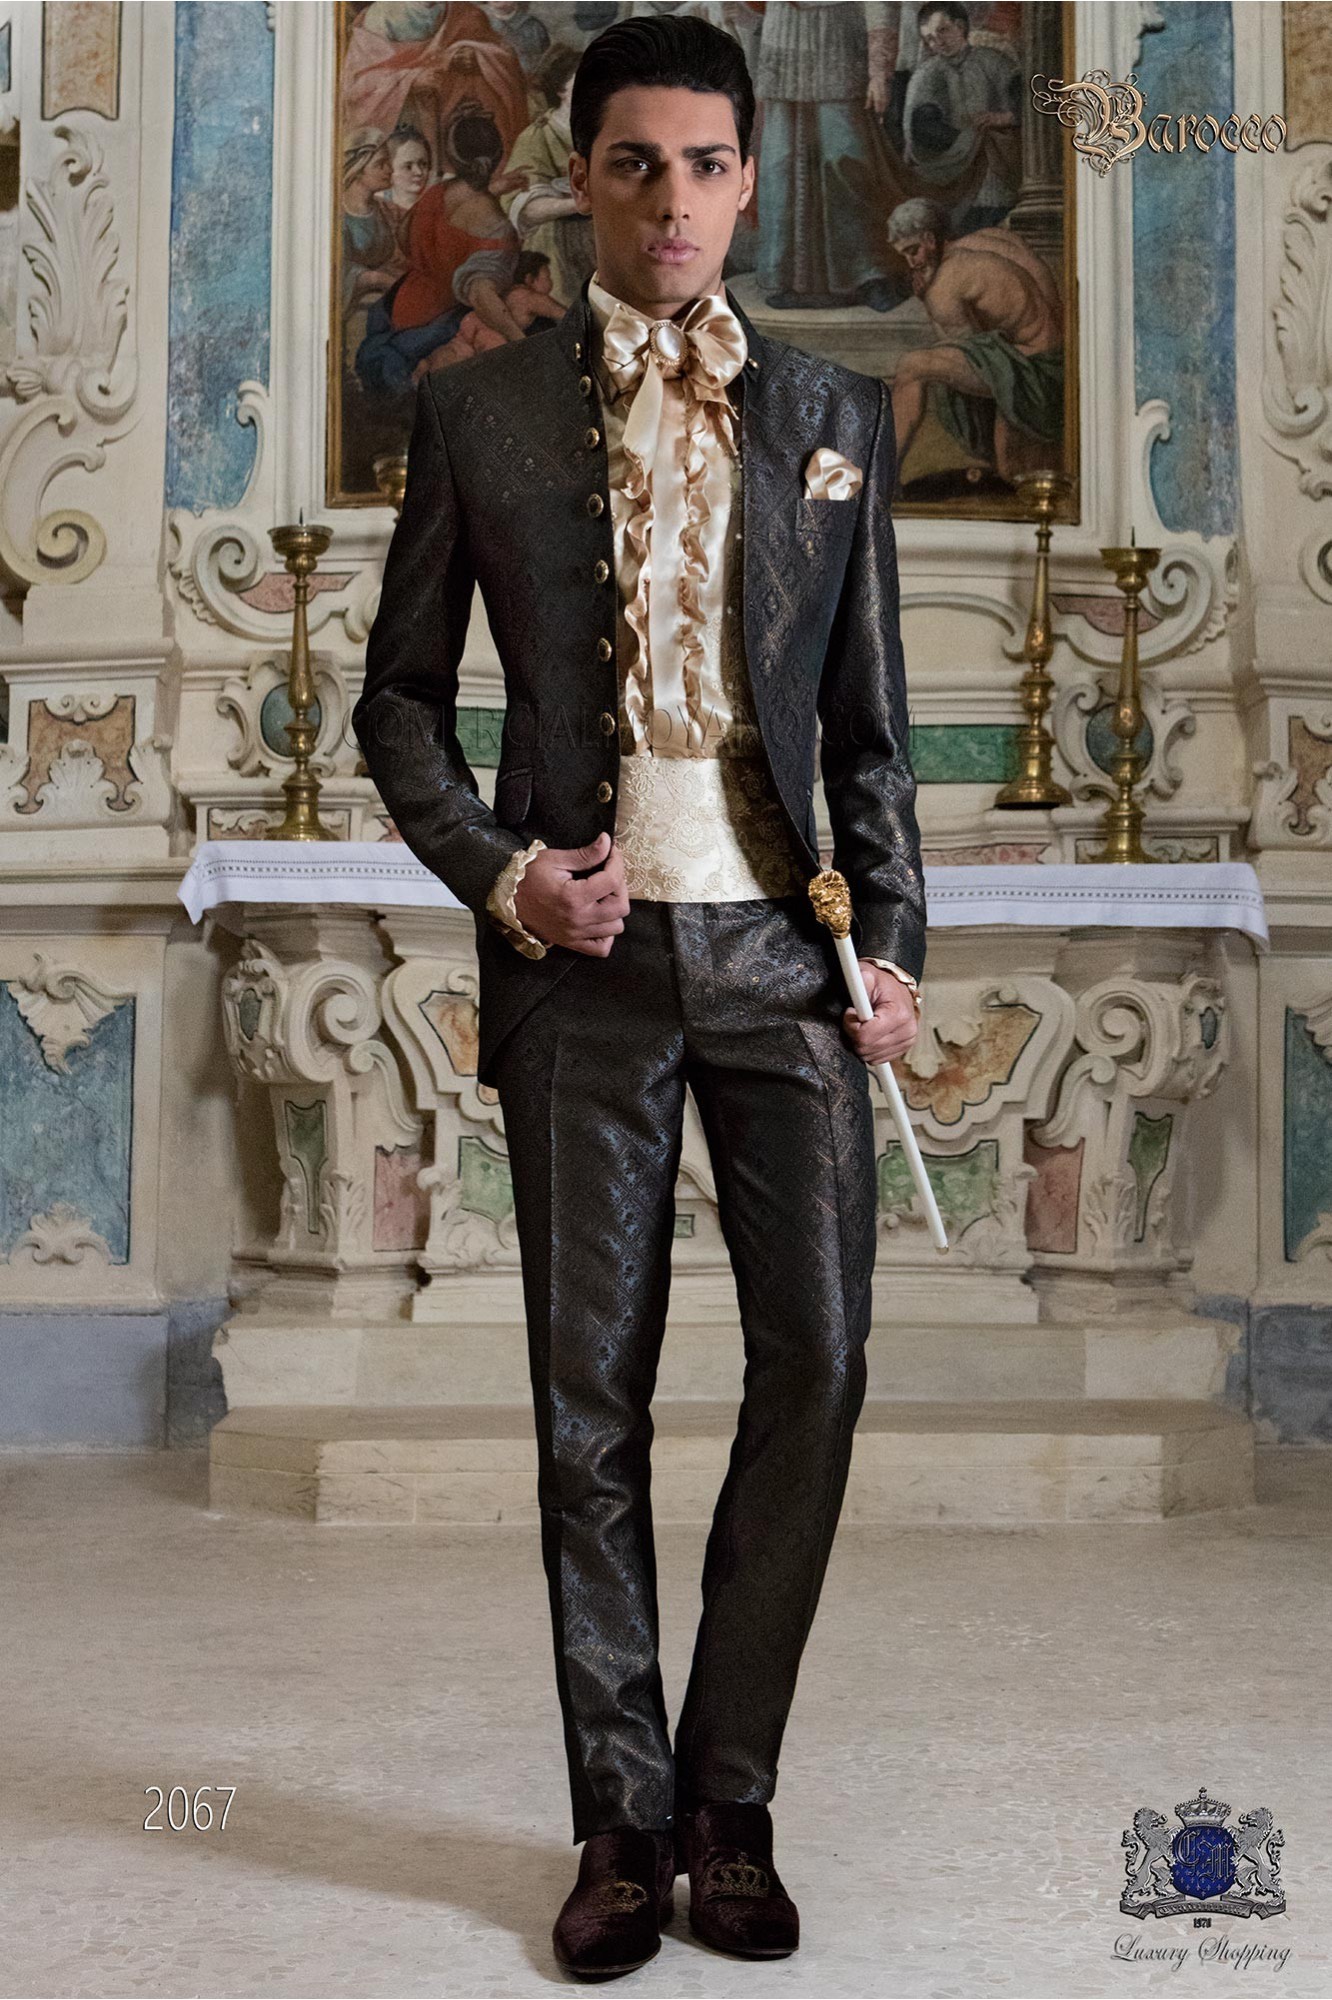 casaca de época cuello Napoleón en tejido brocado gris-oro con botones dorados modelo: 2067 Mario Moyano colección Barroco